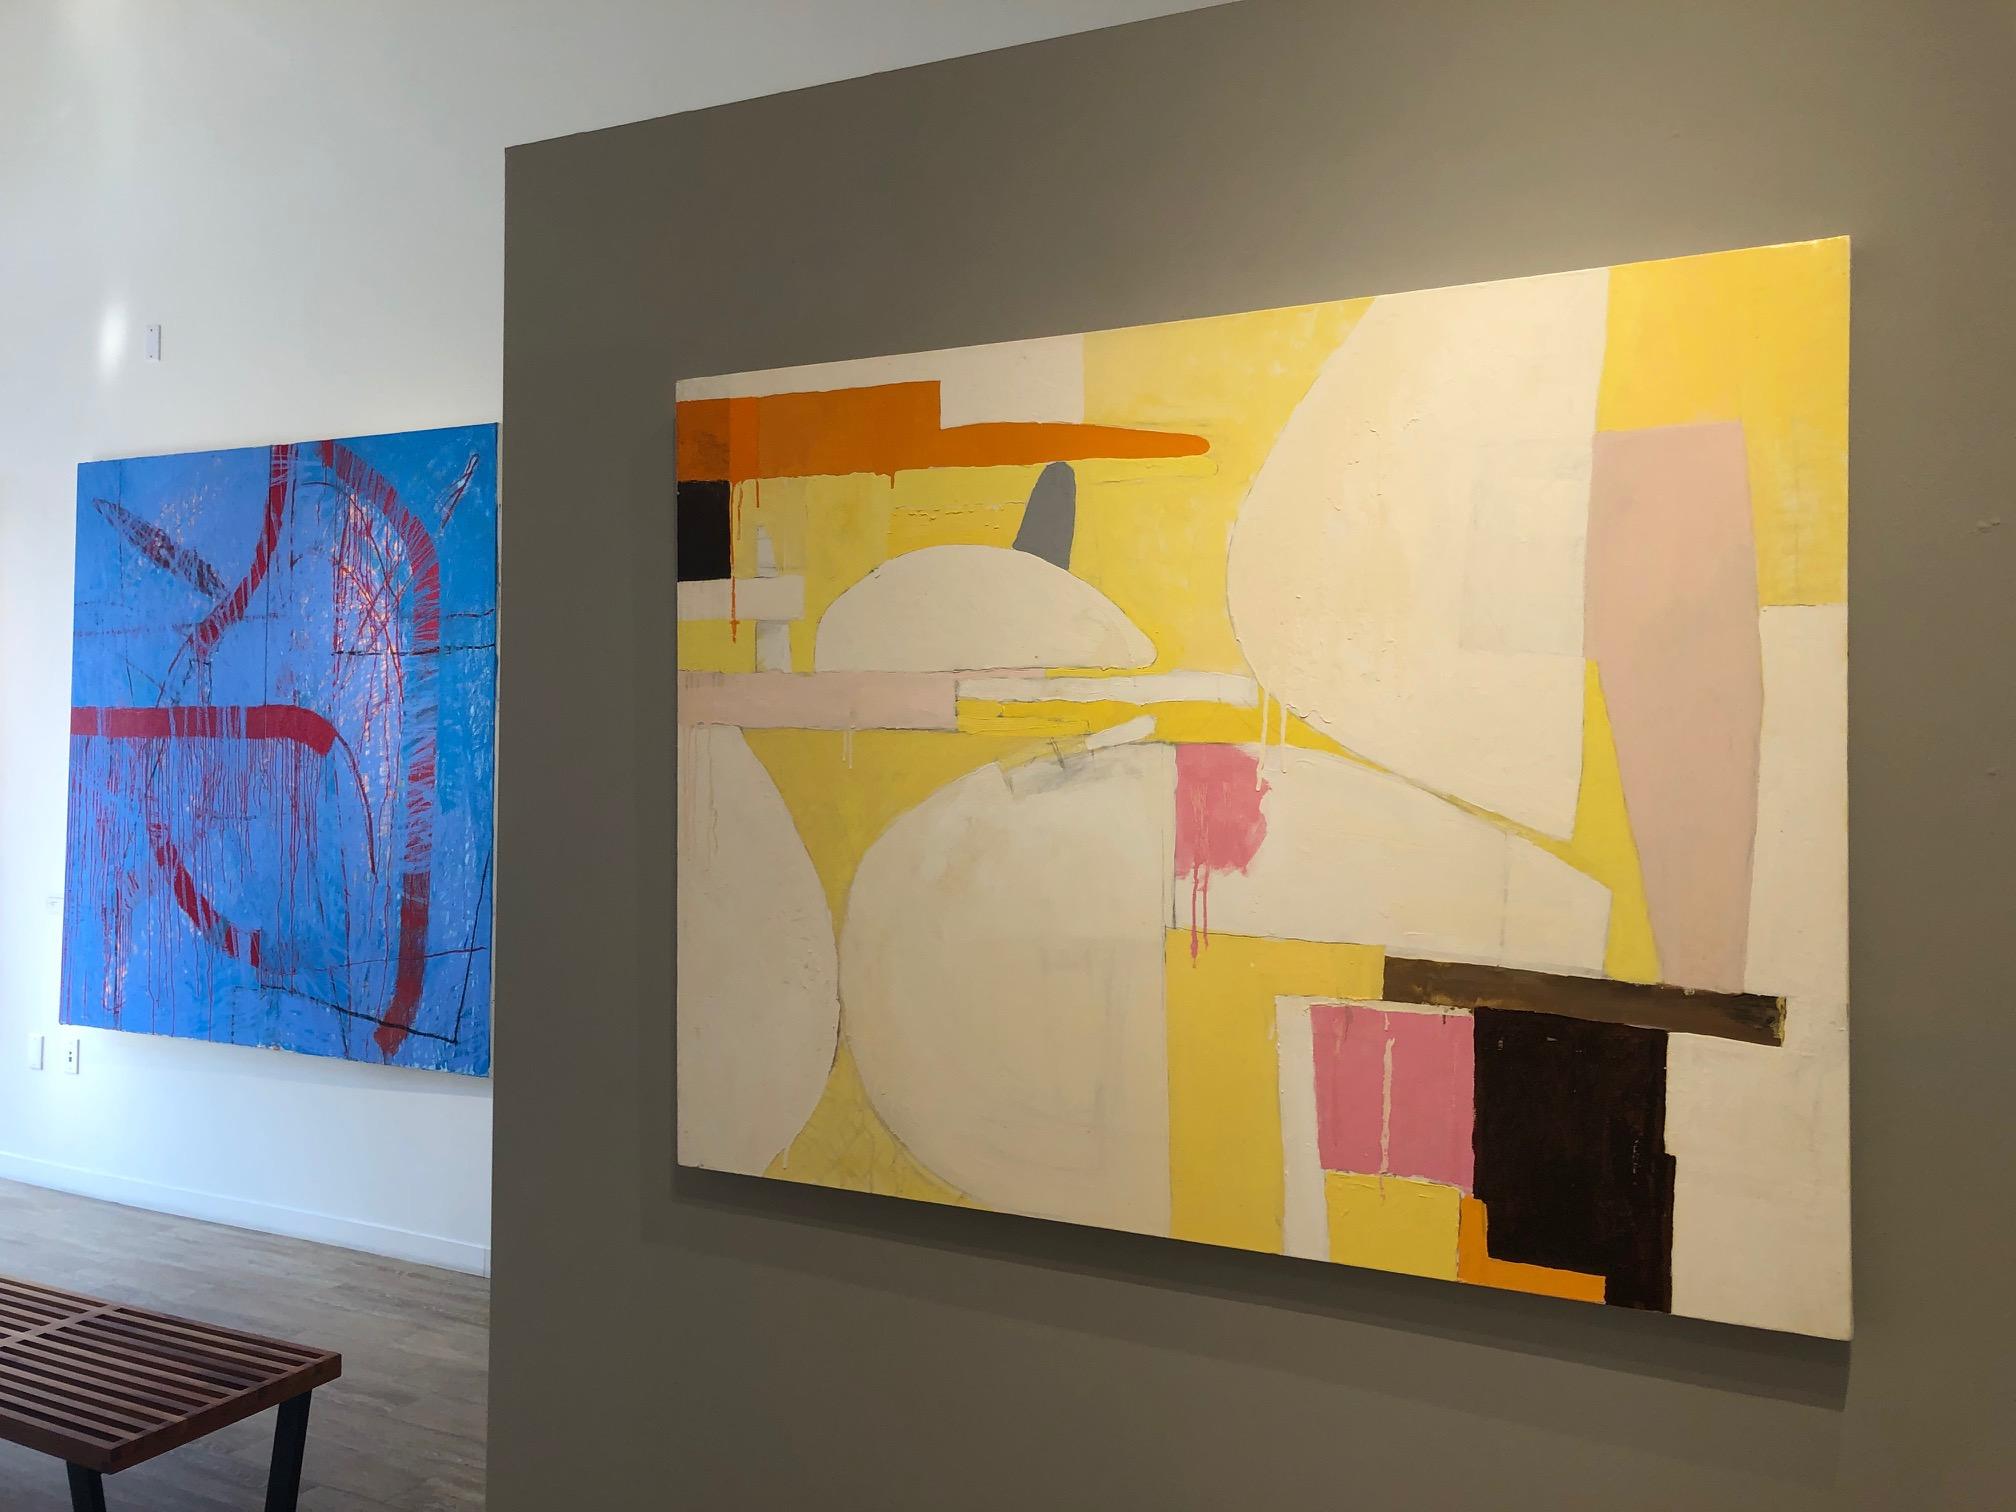 Stillleben / abstrakte expressionistische Geometrie in sanftem Gelb – Painting von Javier Arizmendi-Kalb